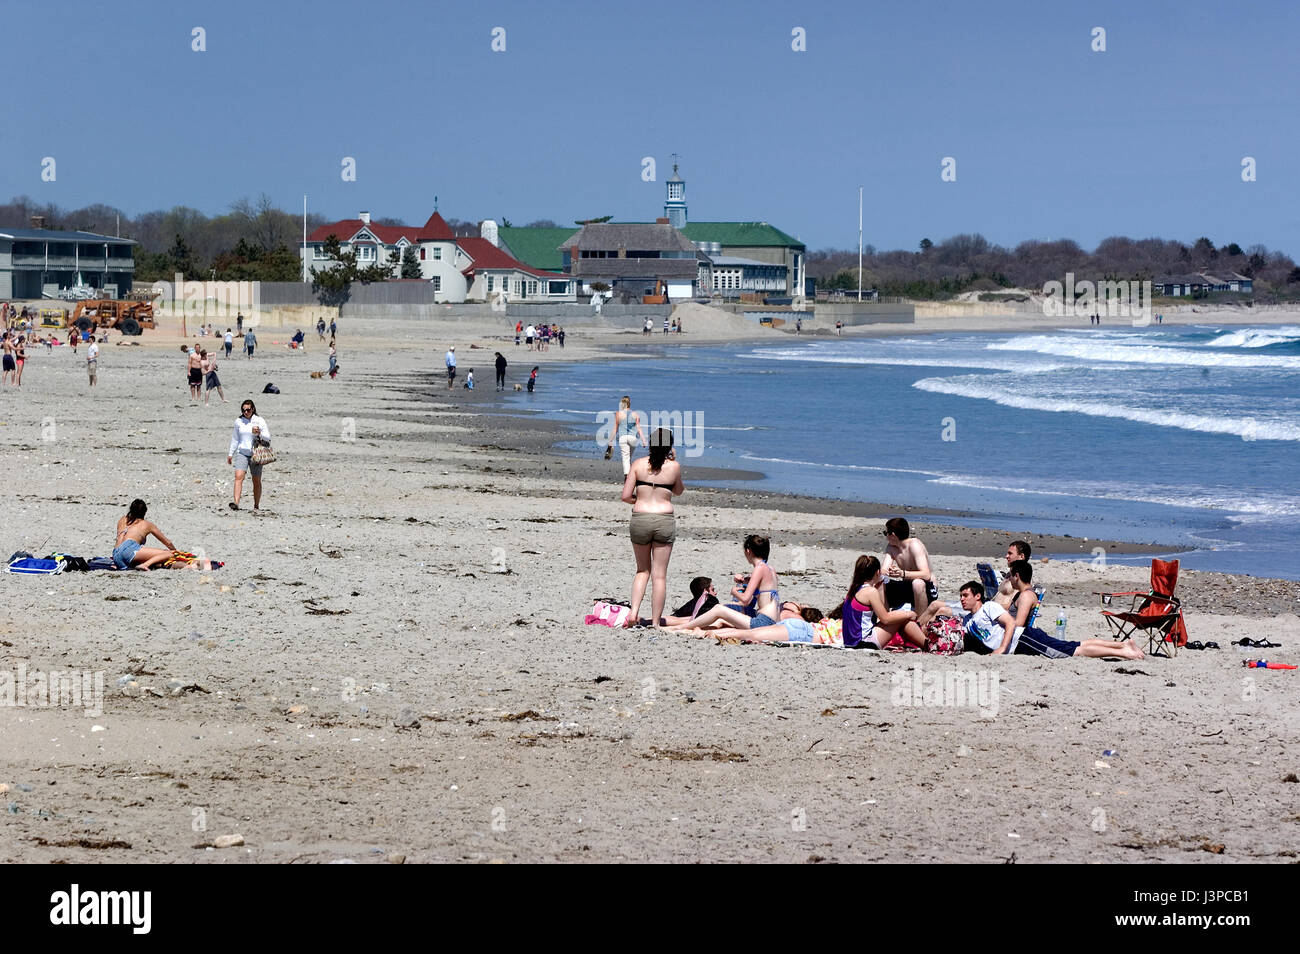 The beaches/ shoreline ofNarraganset, Rhode Island, USA Stock Photo